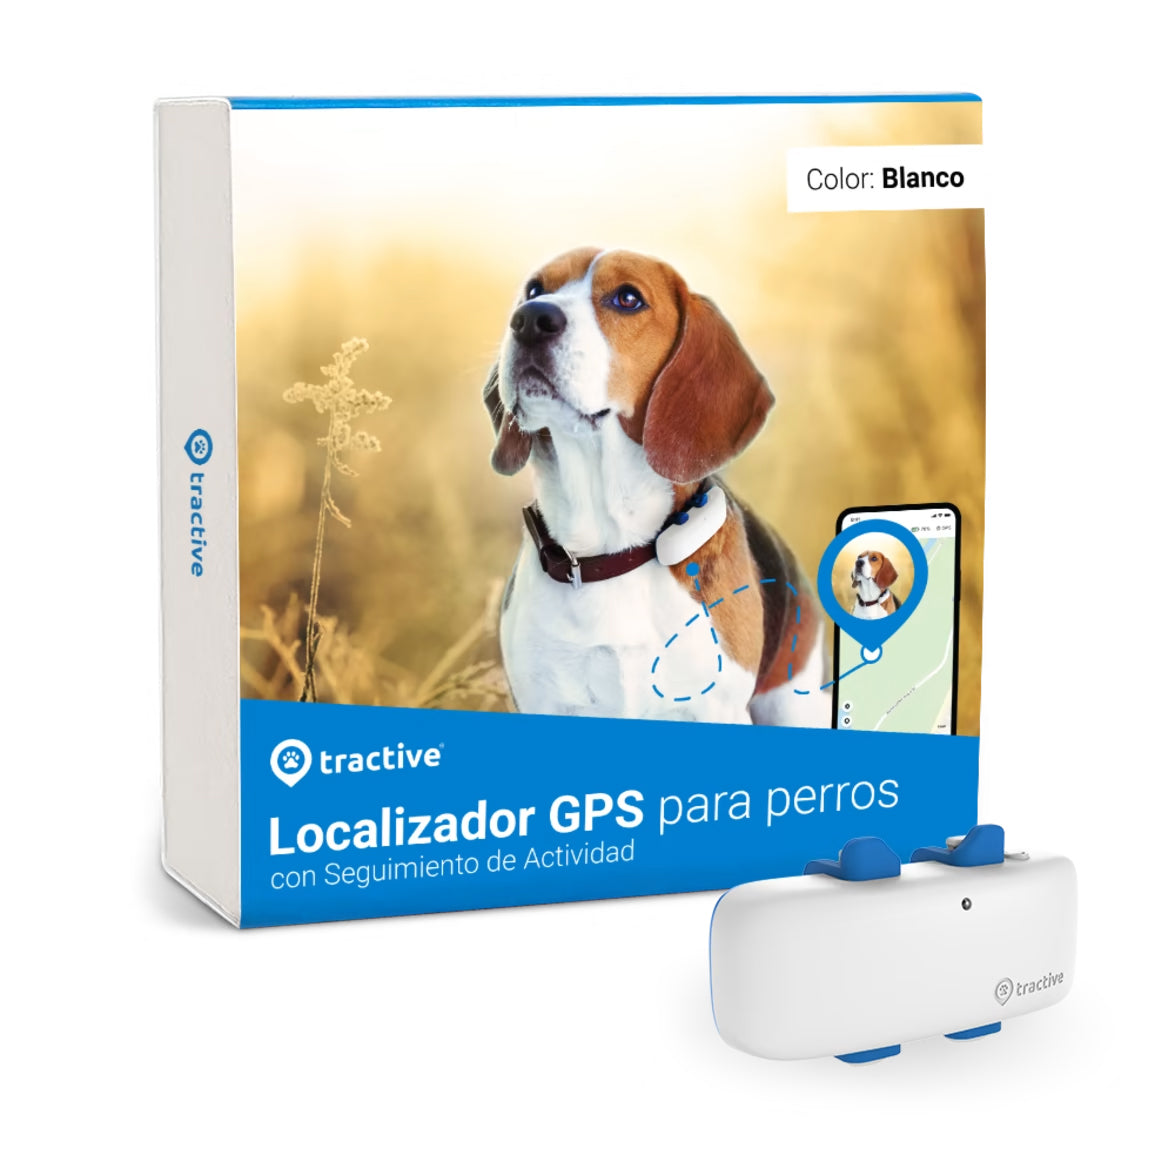 Localizador GPS para perros Tractive – Pollo & Paco